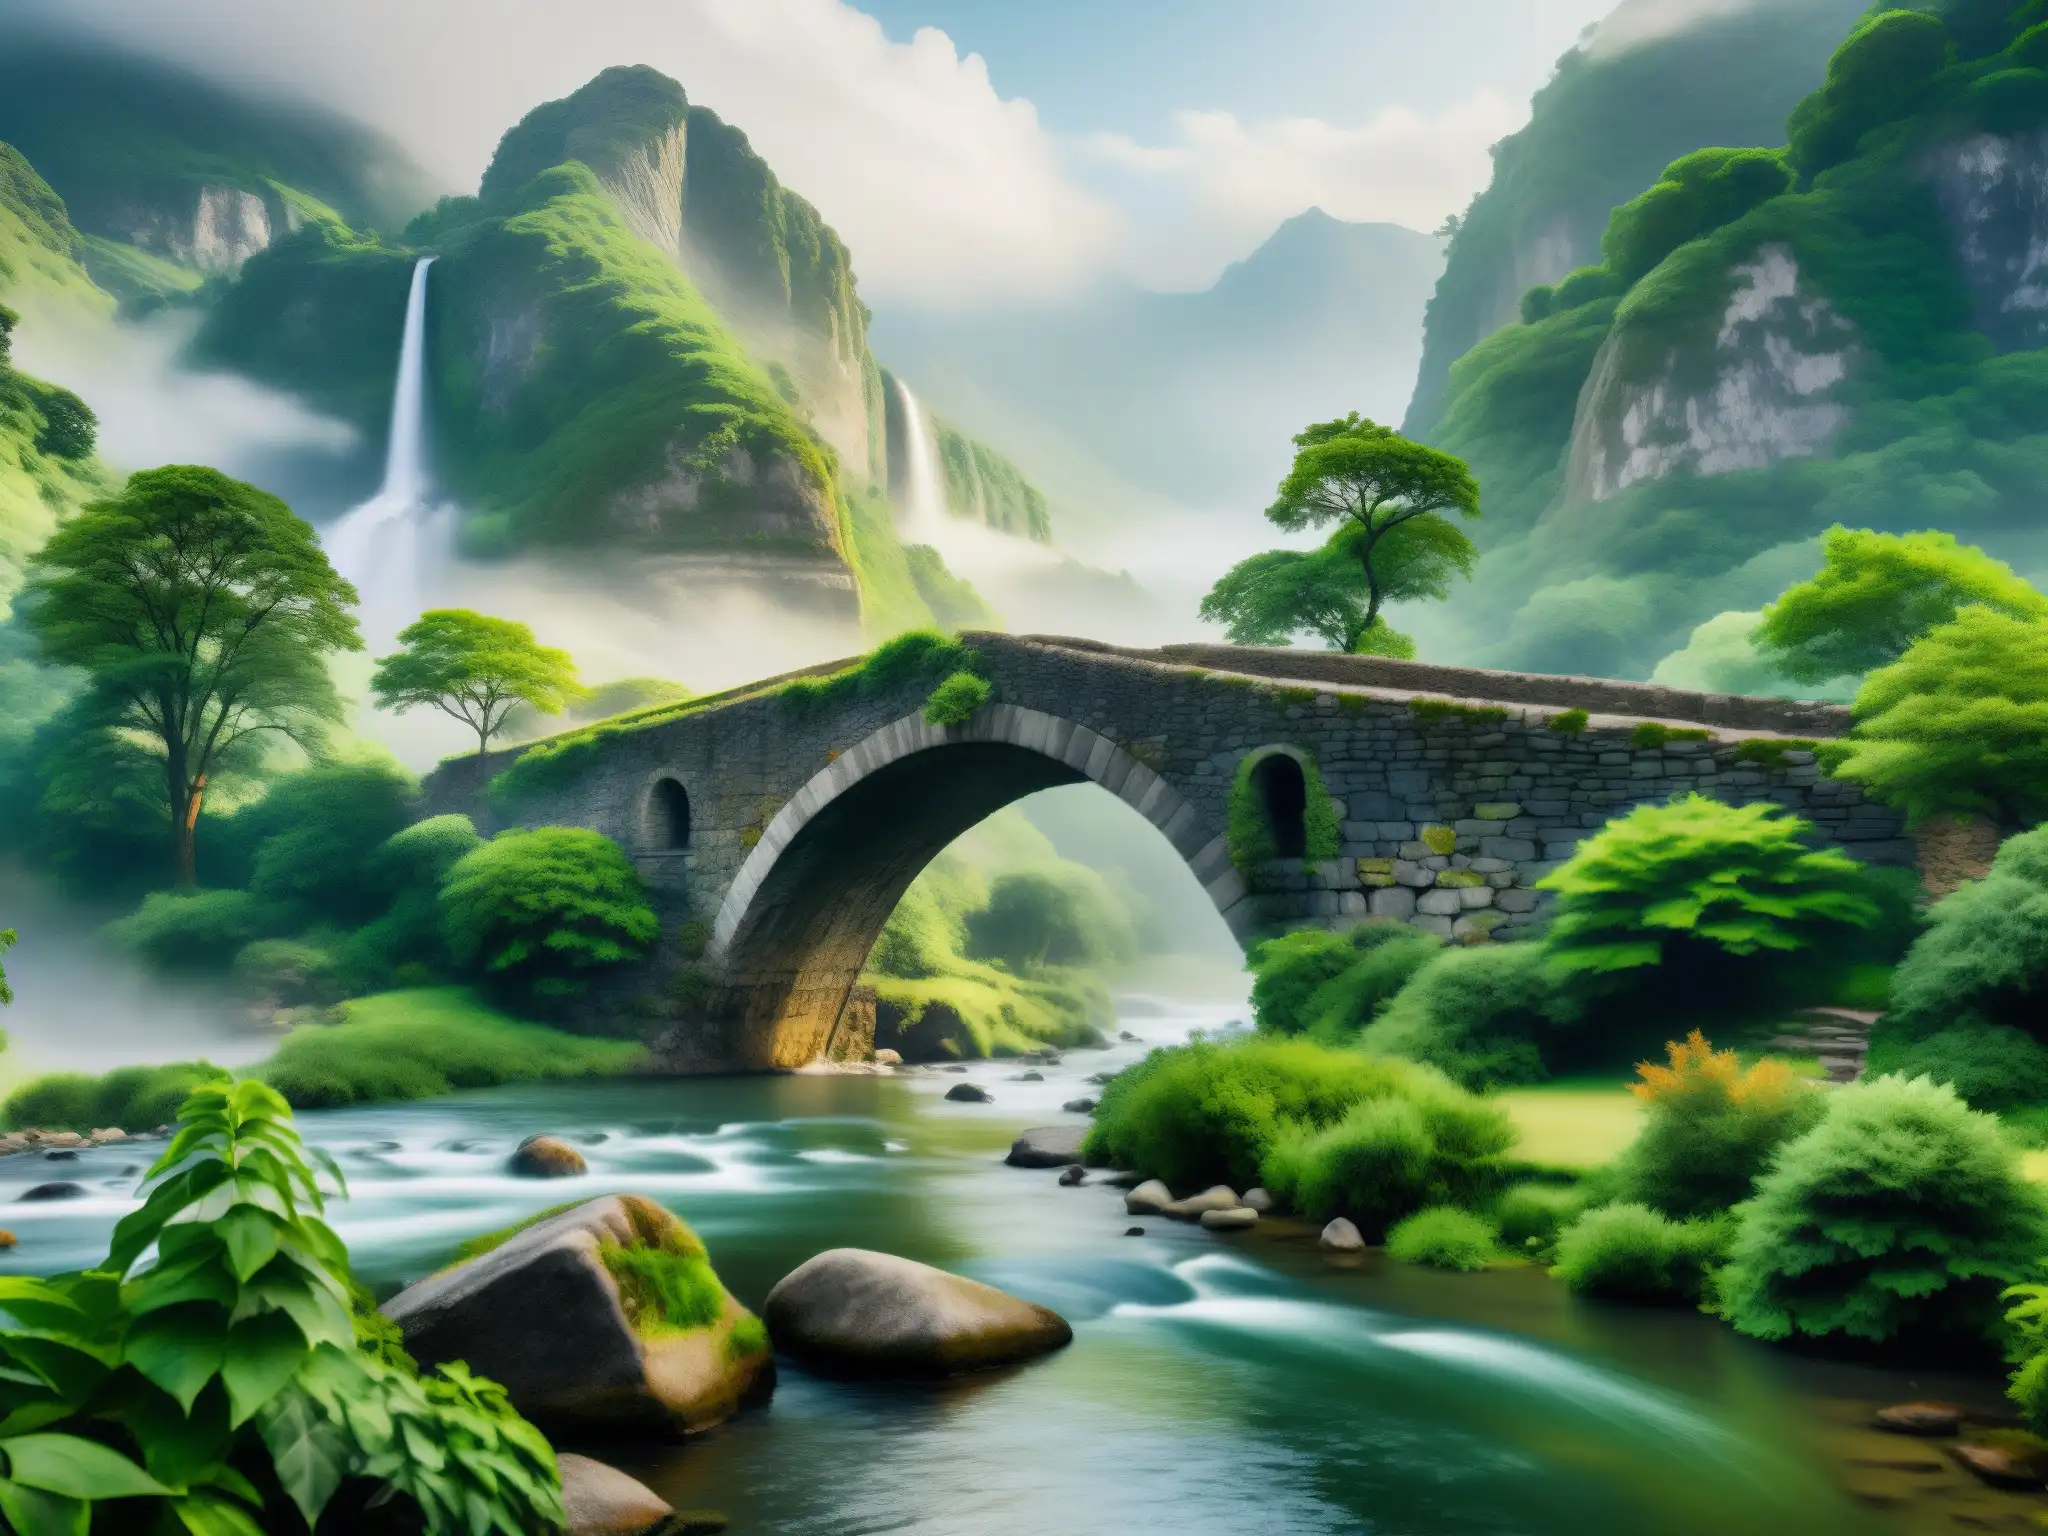 Un puente de piedra antiguo y misterioso cruza un río sereno, rodeado de exuberante vegetación y una montaña imponente